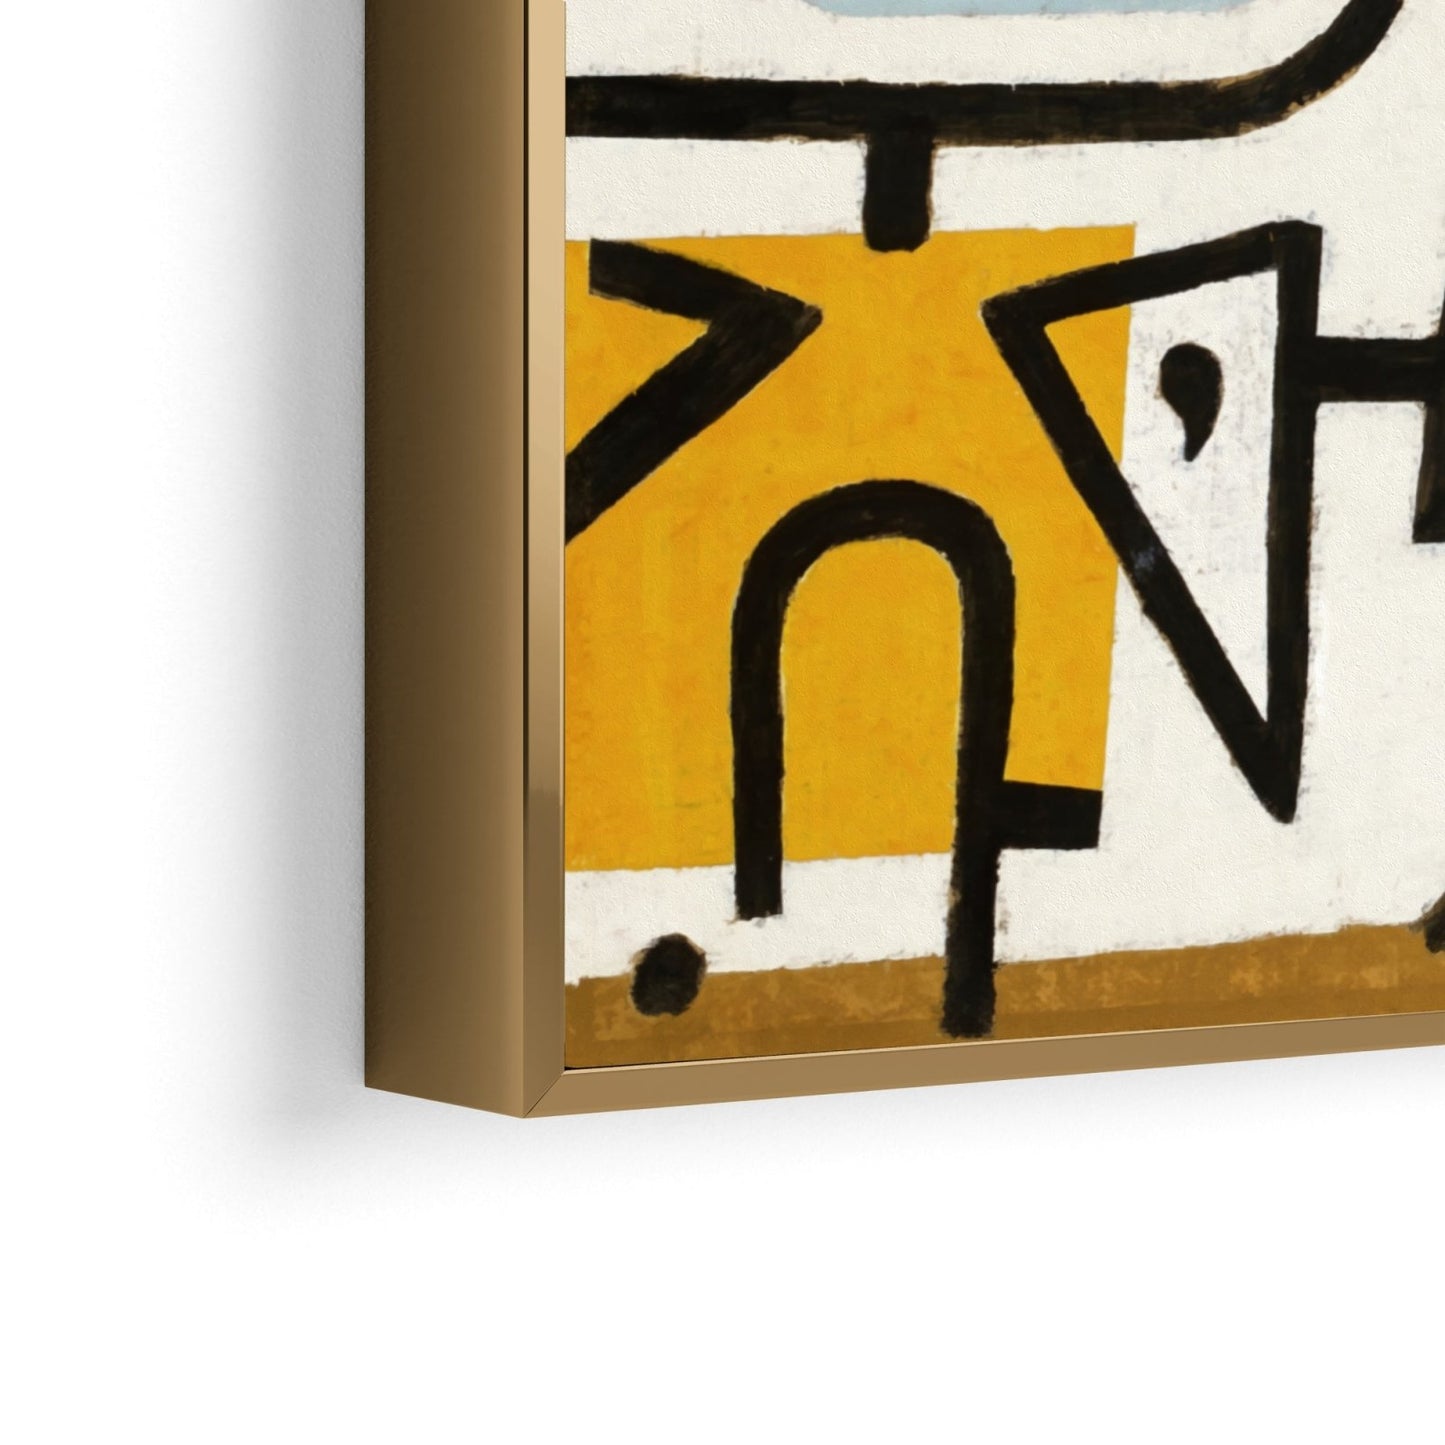 Paul Klee, Portul bogat